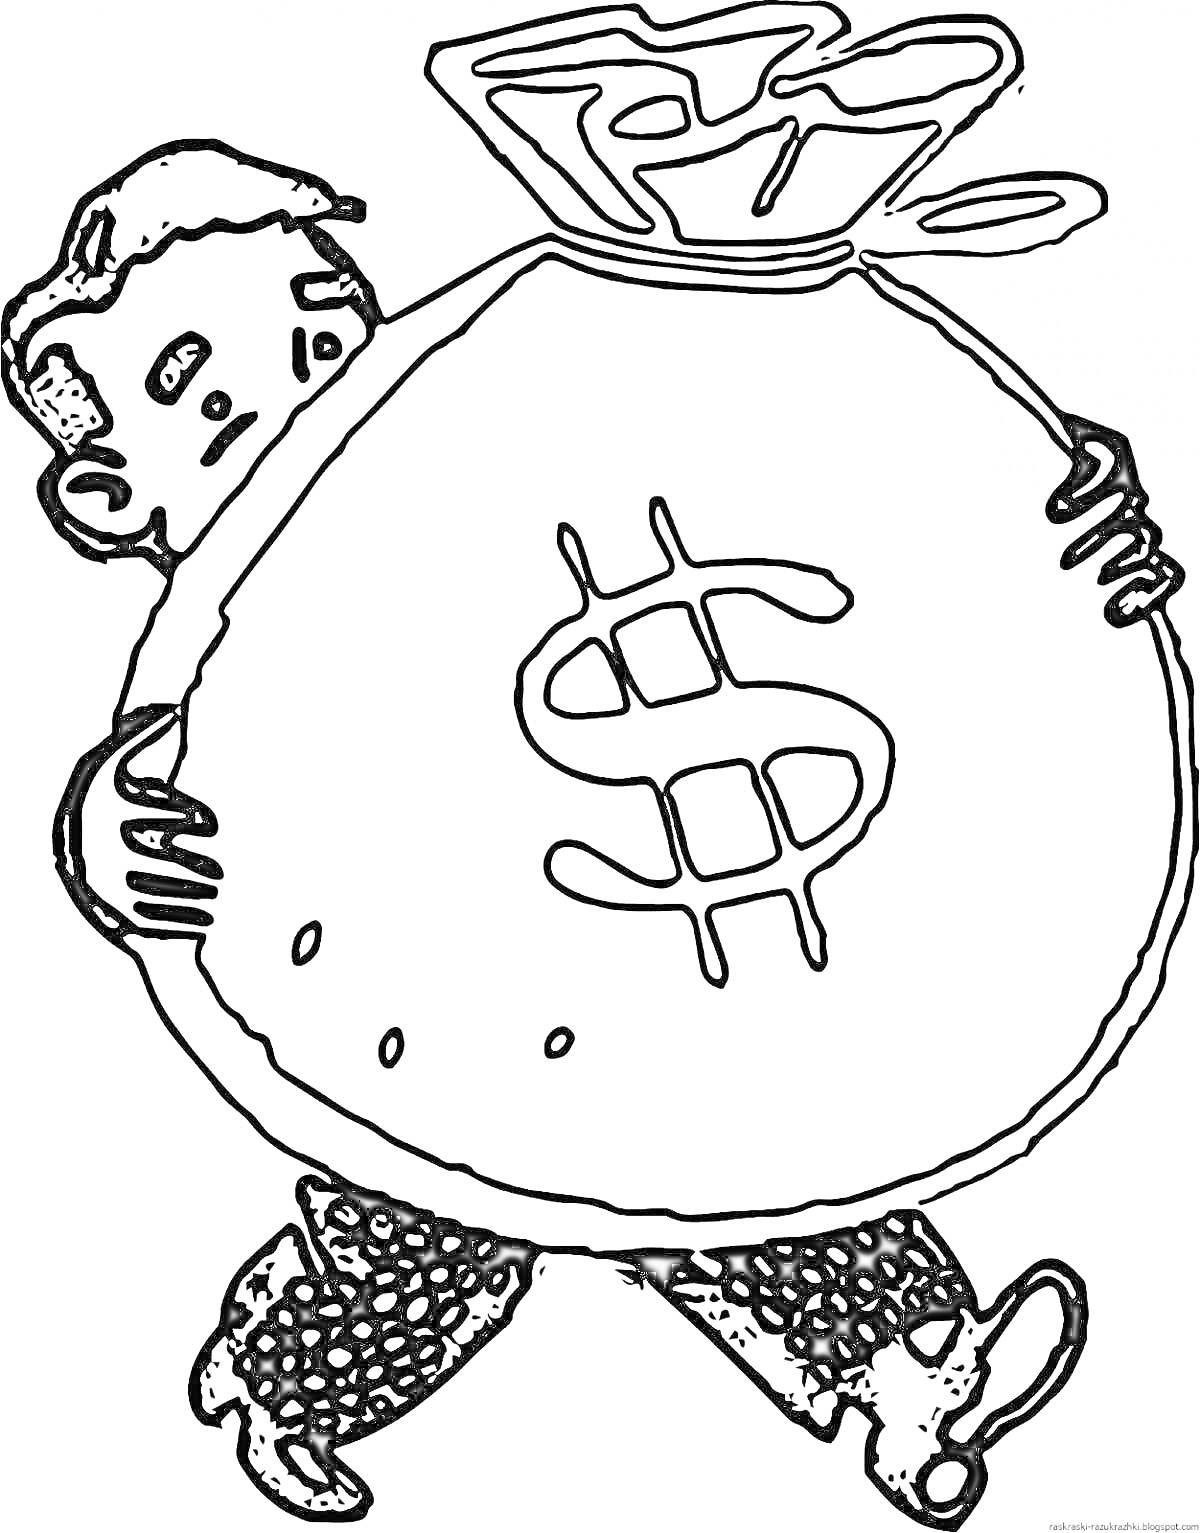 Раскраска Мальчик, несущий большой мешок с деньгами и долларовым знаком